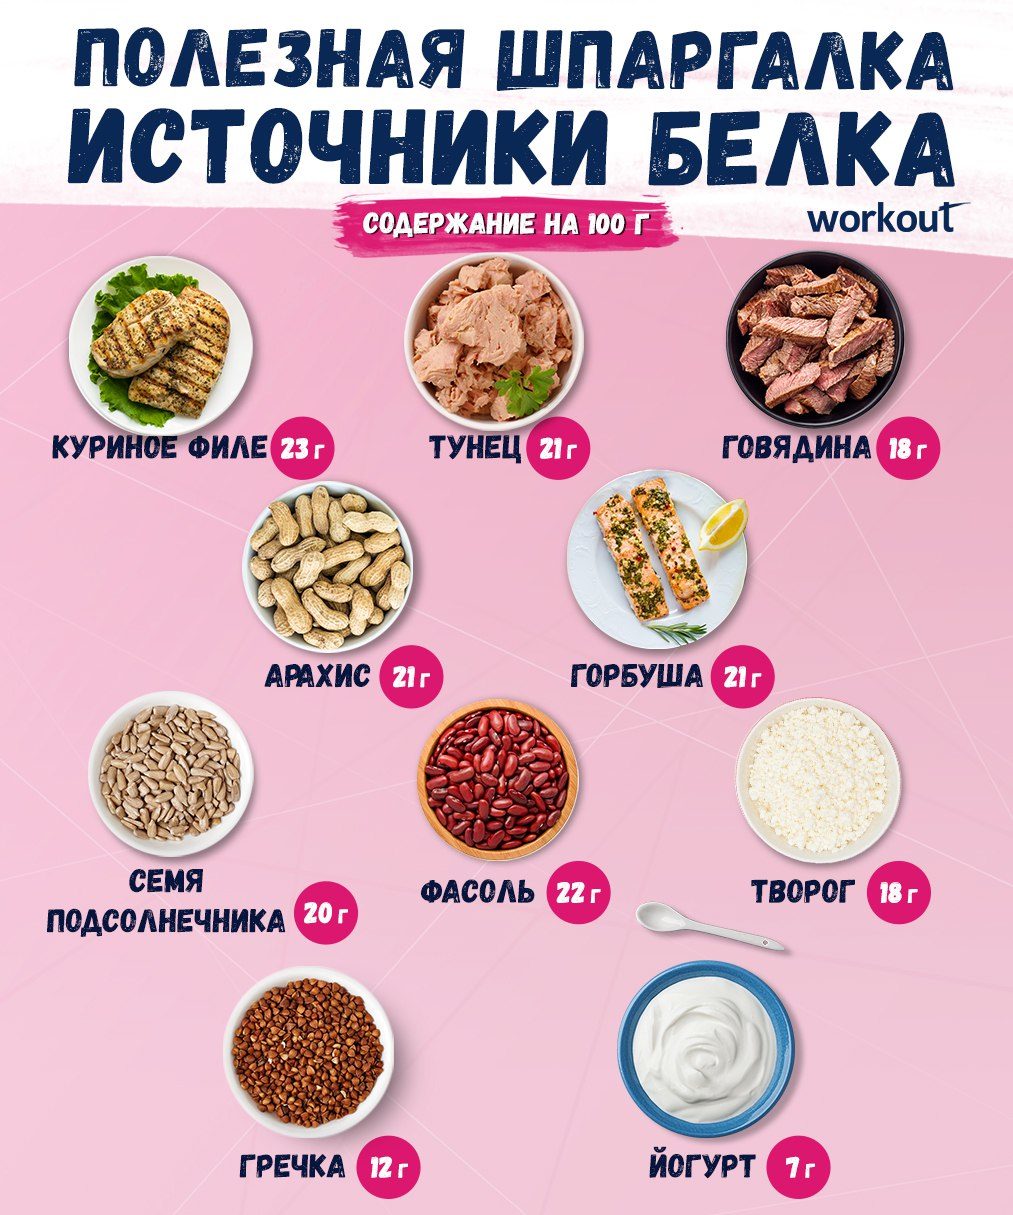 Продукты содержащие белки список продуктов для похудения